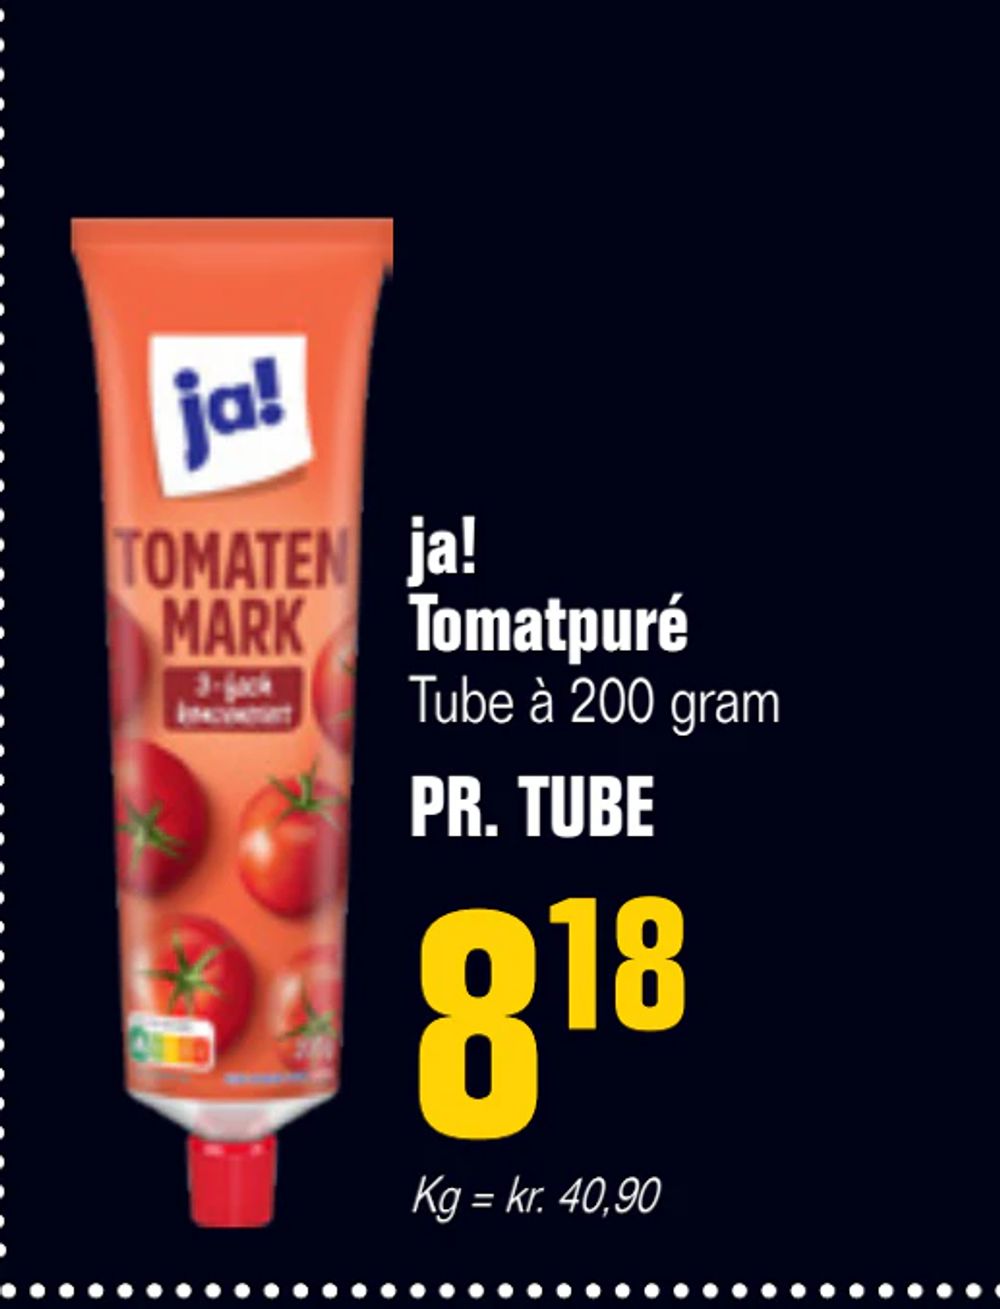 Tilbud på ja! Tomatpuré fra Otto Duborg til 8,18 kr.